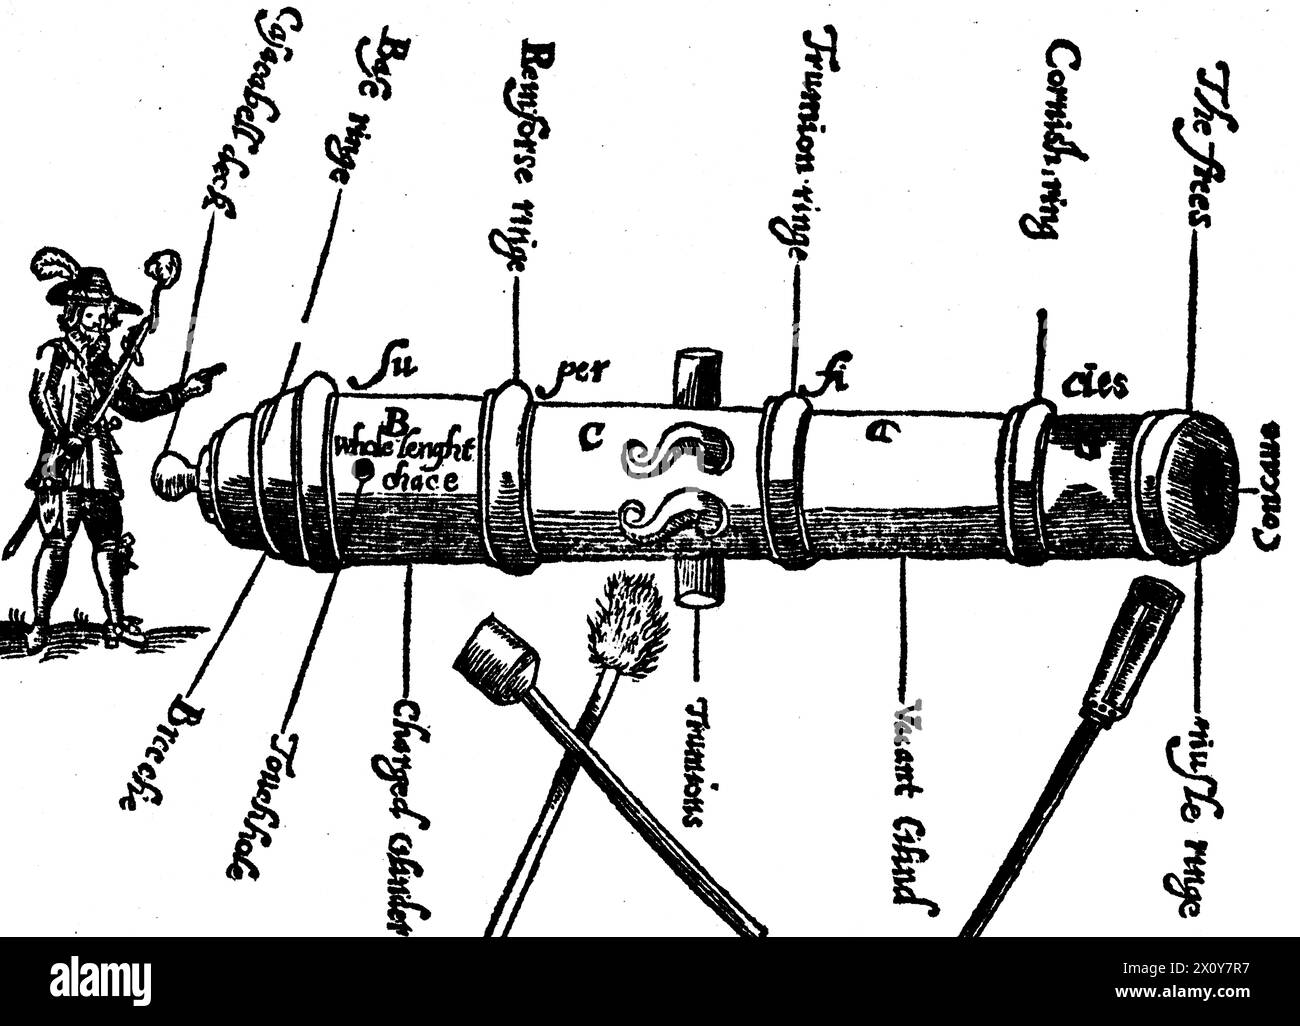 Un cannone del XVII secolo, dal frontespizio al "The Compleat Canonier" di John Roberts, 1652. Il Compleat Canonier fornisce una descrizione dell'arte del Gunner durante il periodo della guerra civile inglese. Foto Stock